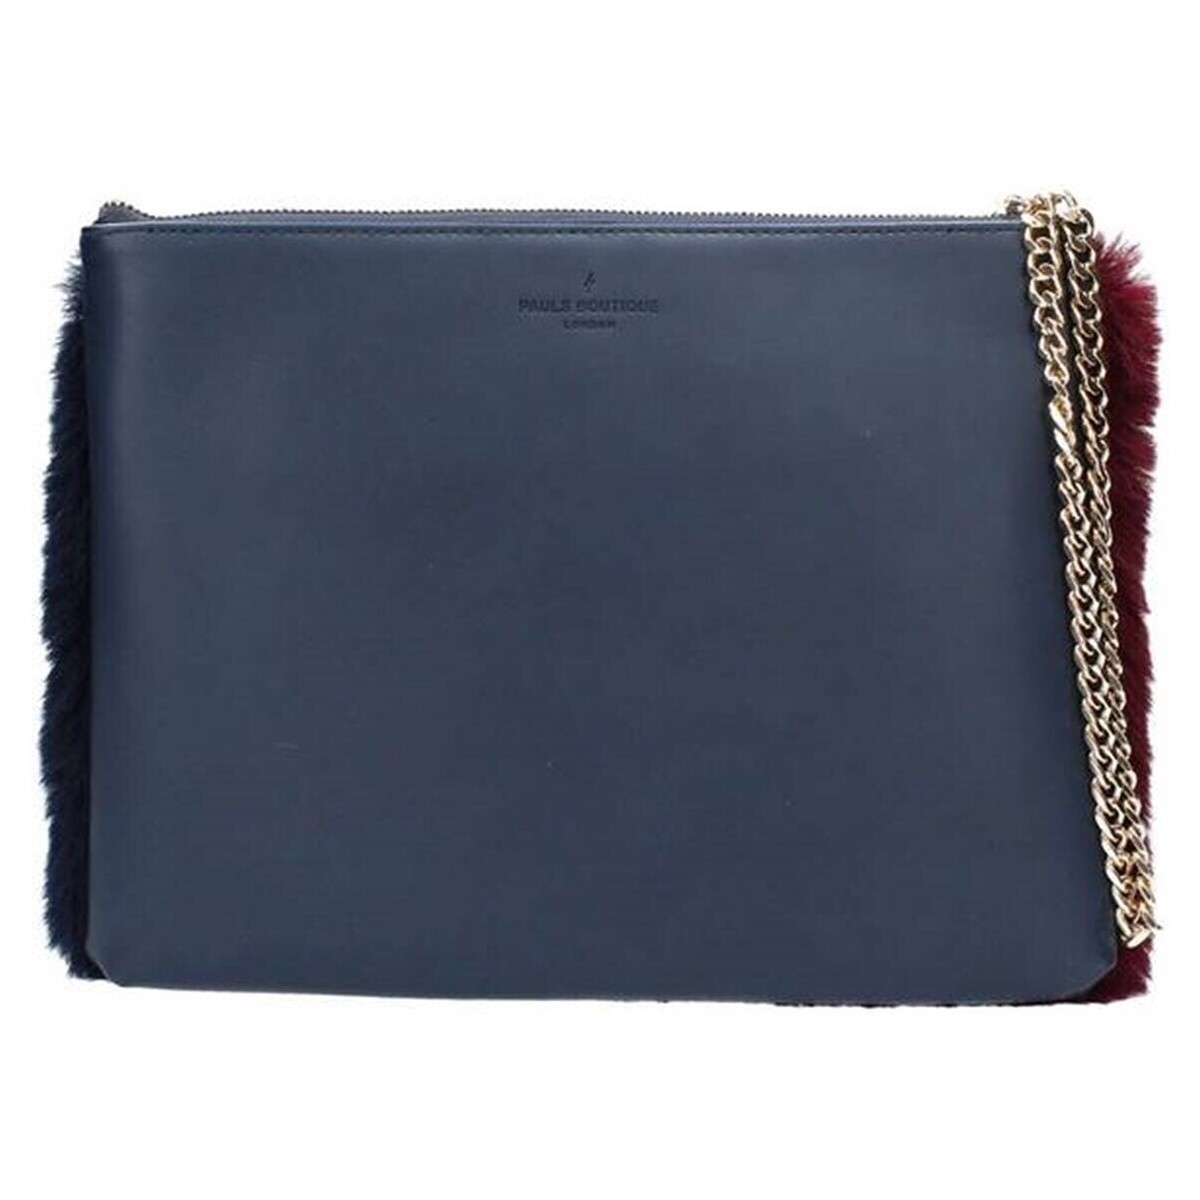 Taschen Geldtasche / Handtasche Pauls Boutique London 127227 Blau